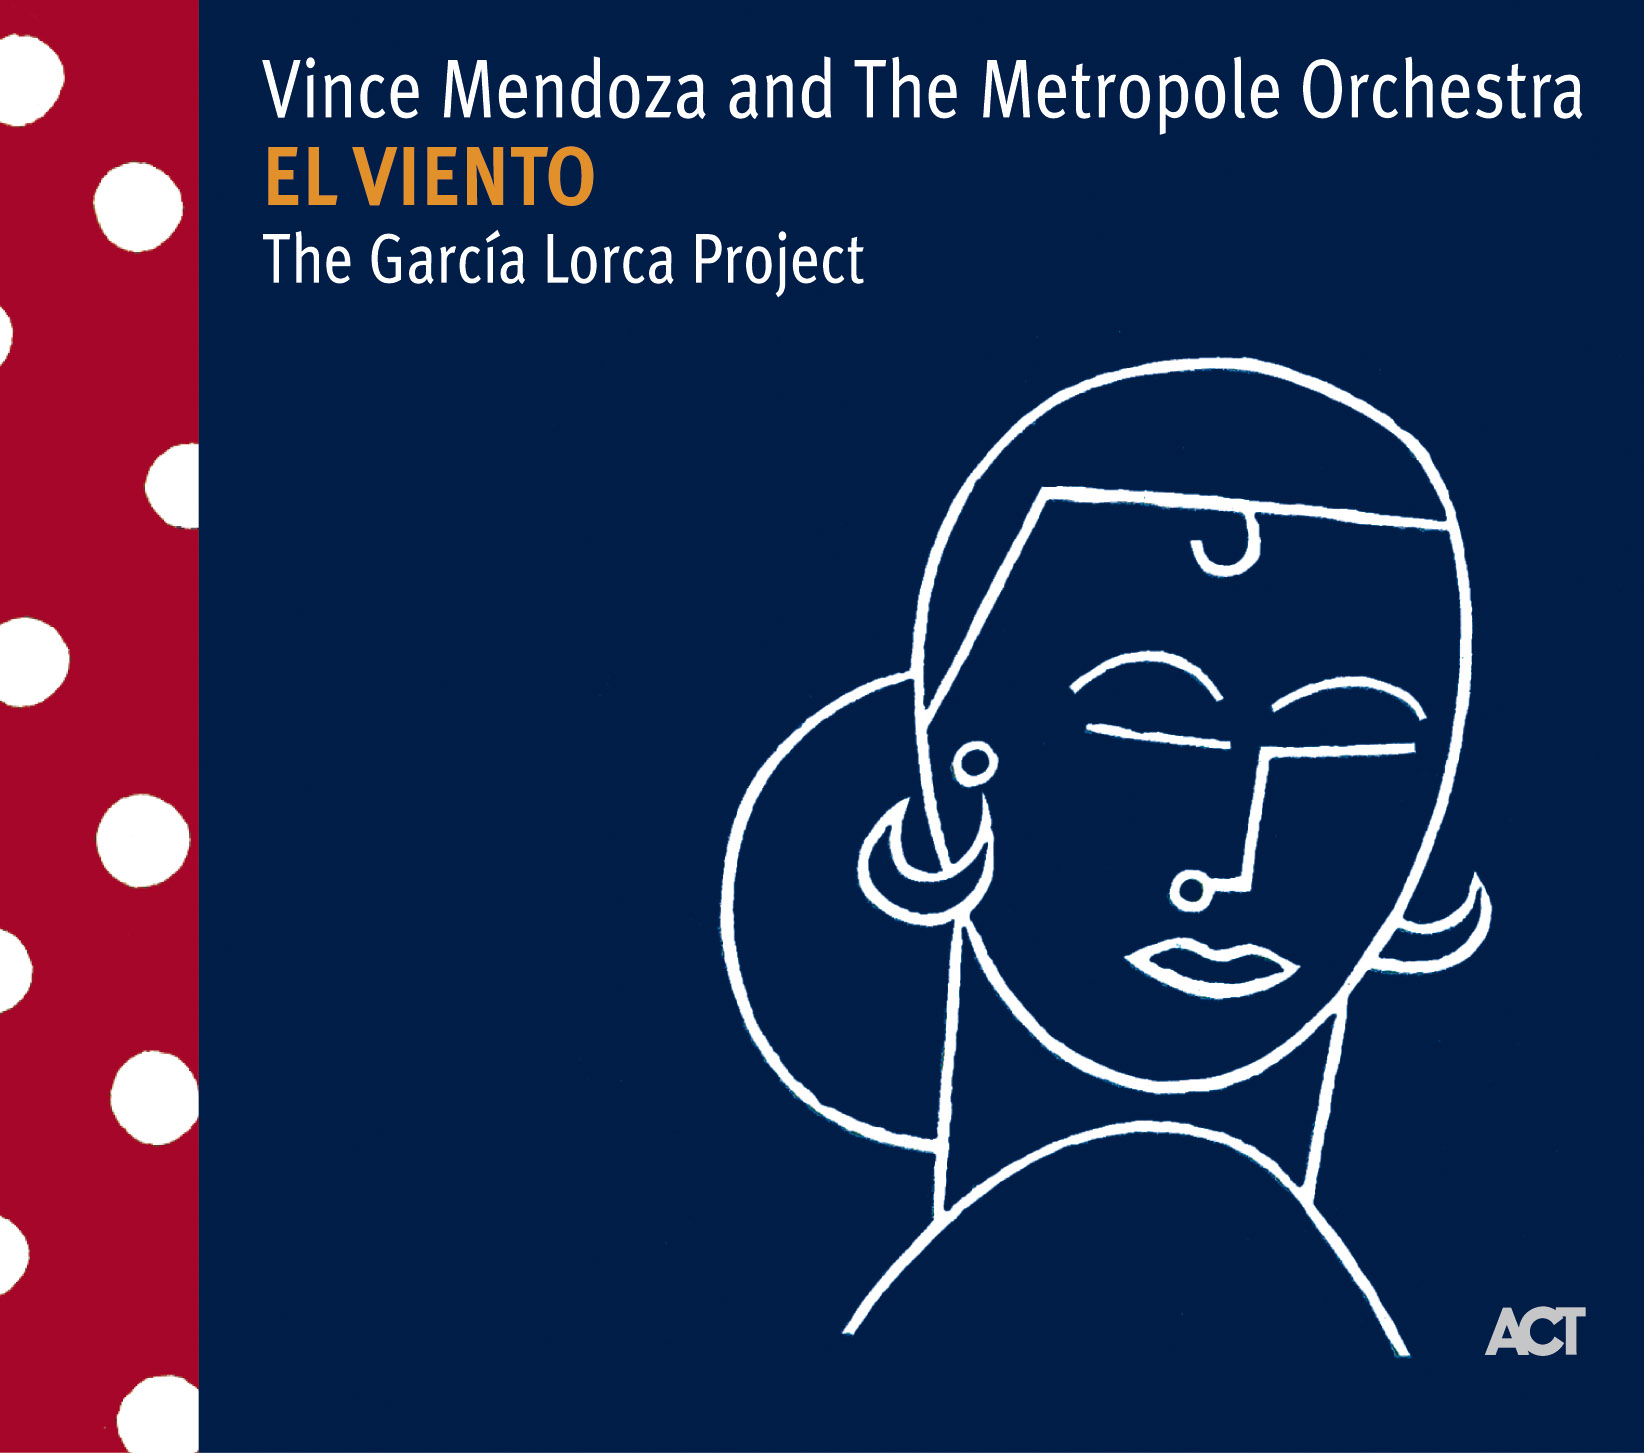 El Viento - The García Lorca Project